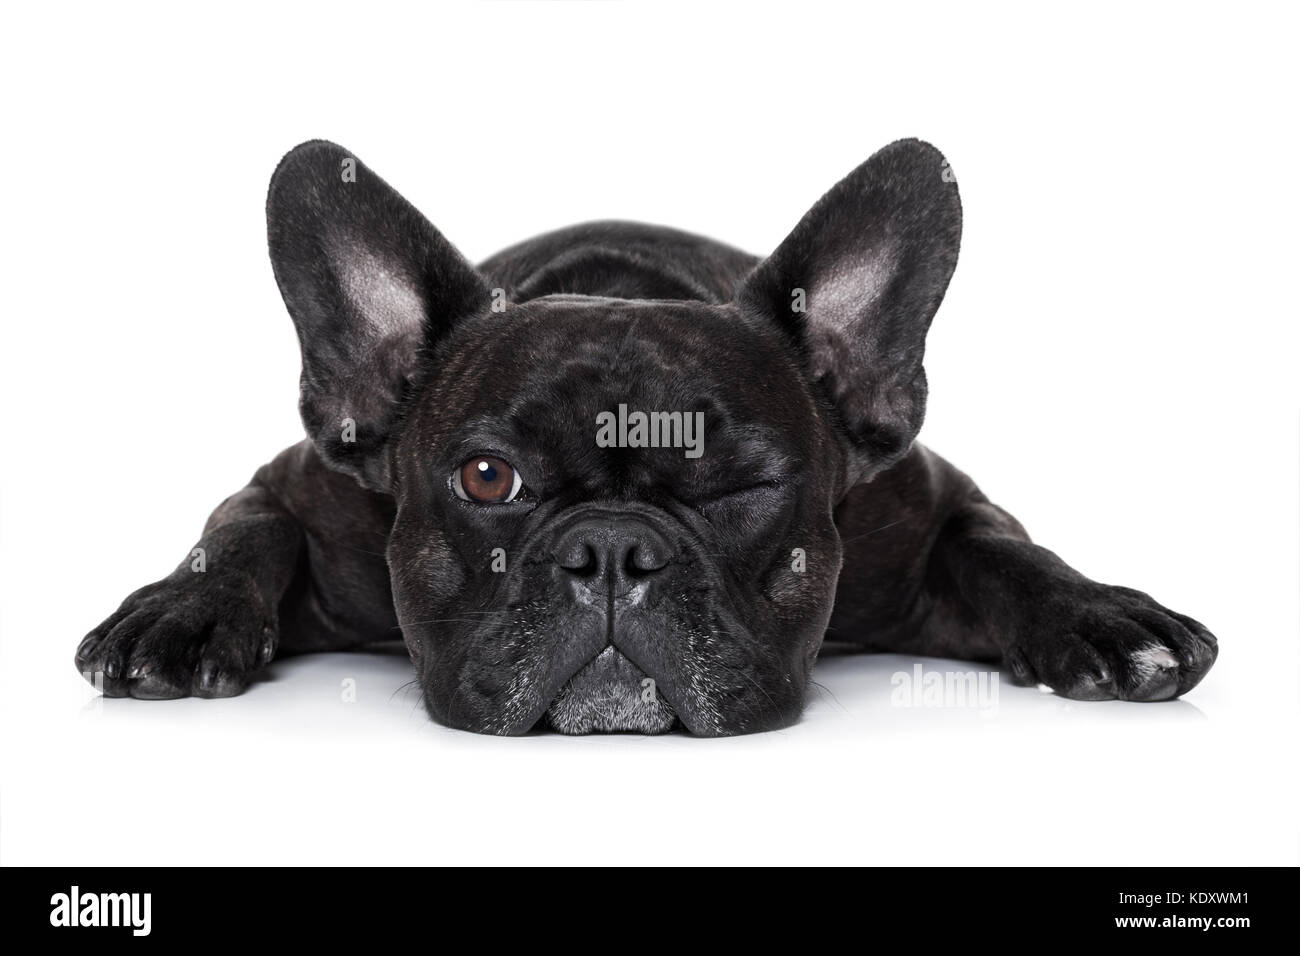 Französische Bulldogge Hund erschöpft oder müde, beobachten und sie starrte  wie ein Kontrollfreak, auf weißem Hintergrund Stockfotografie - Alamy